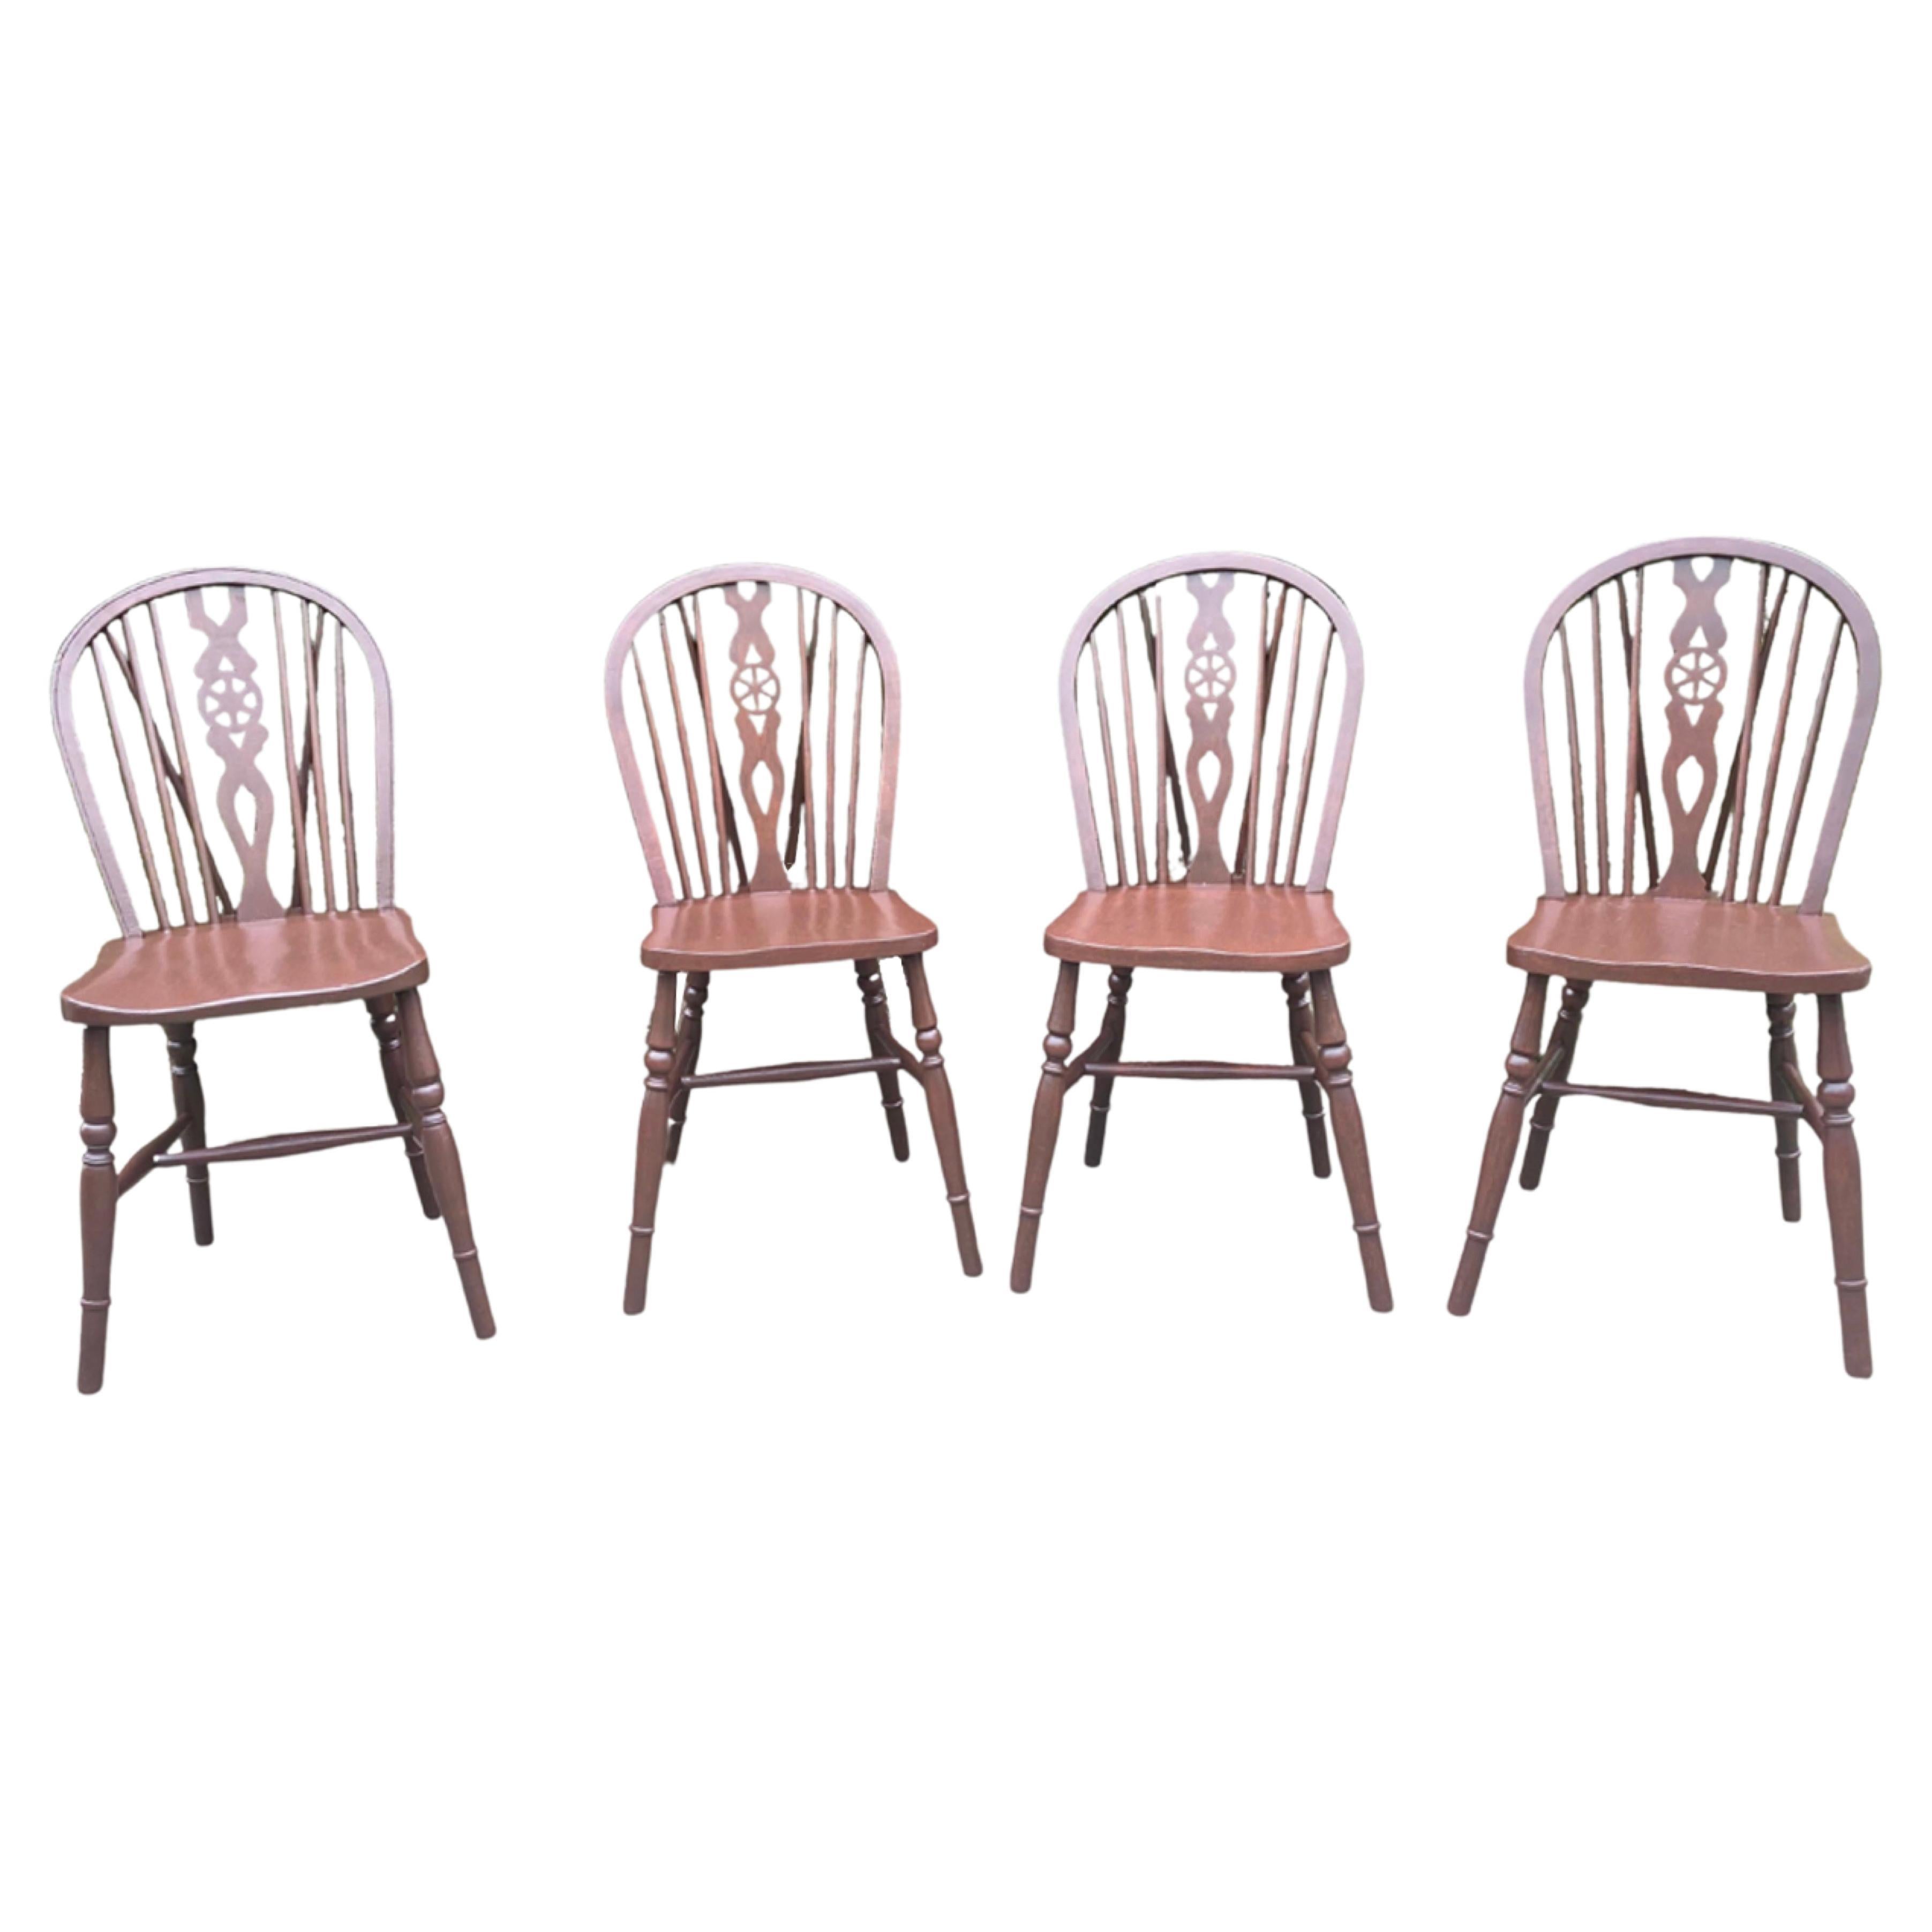 Satz von vier Windsor-Keramikstühlen mit Radrückenlehne aus massivem Ulmenbaumholz aus dem 19. Jahrhundert